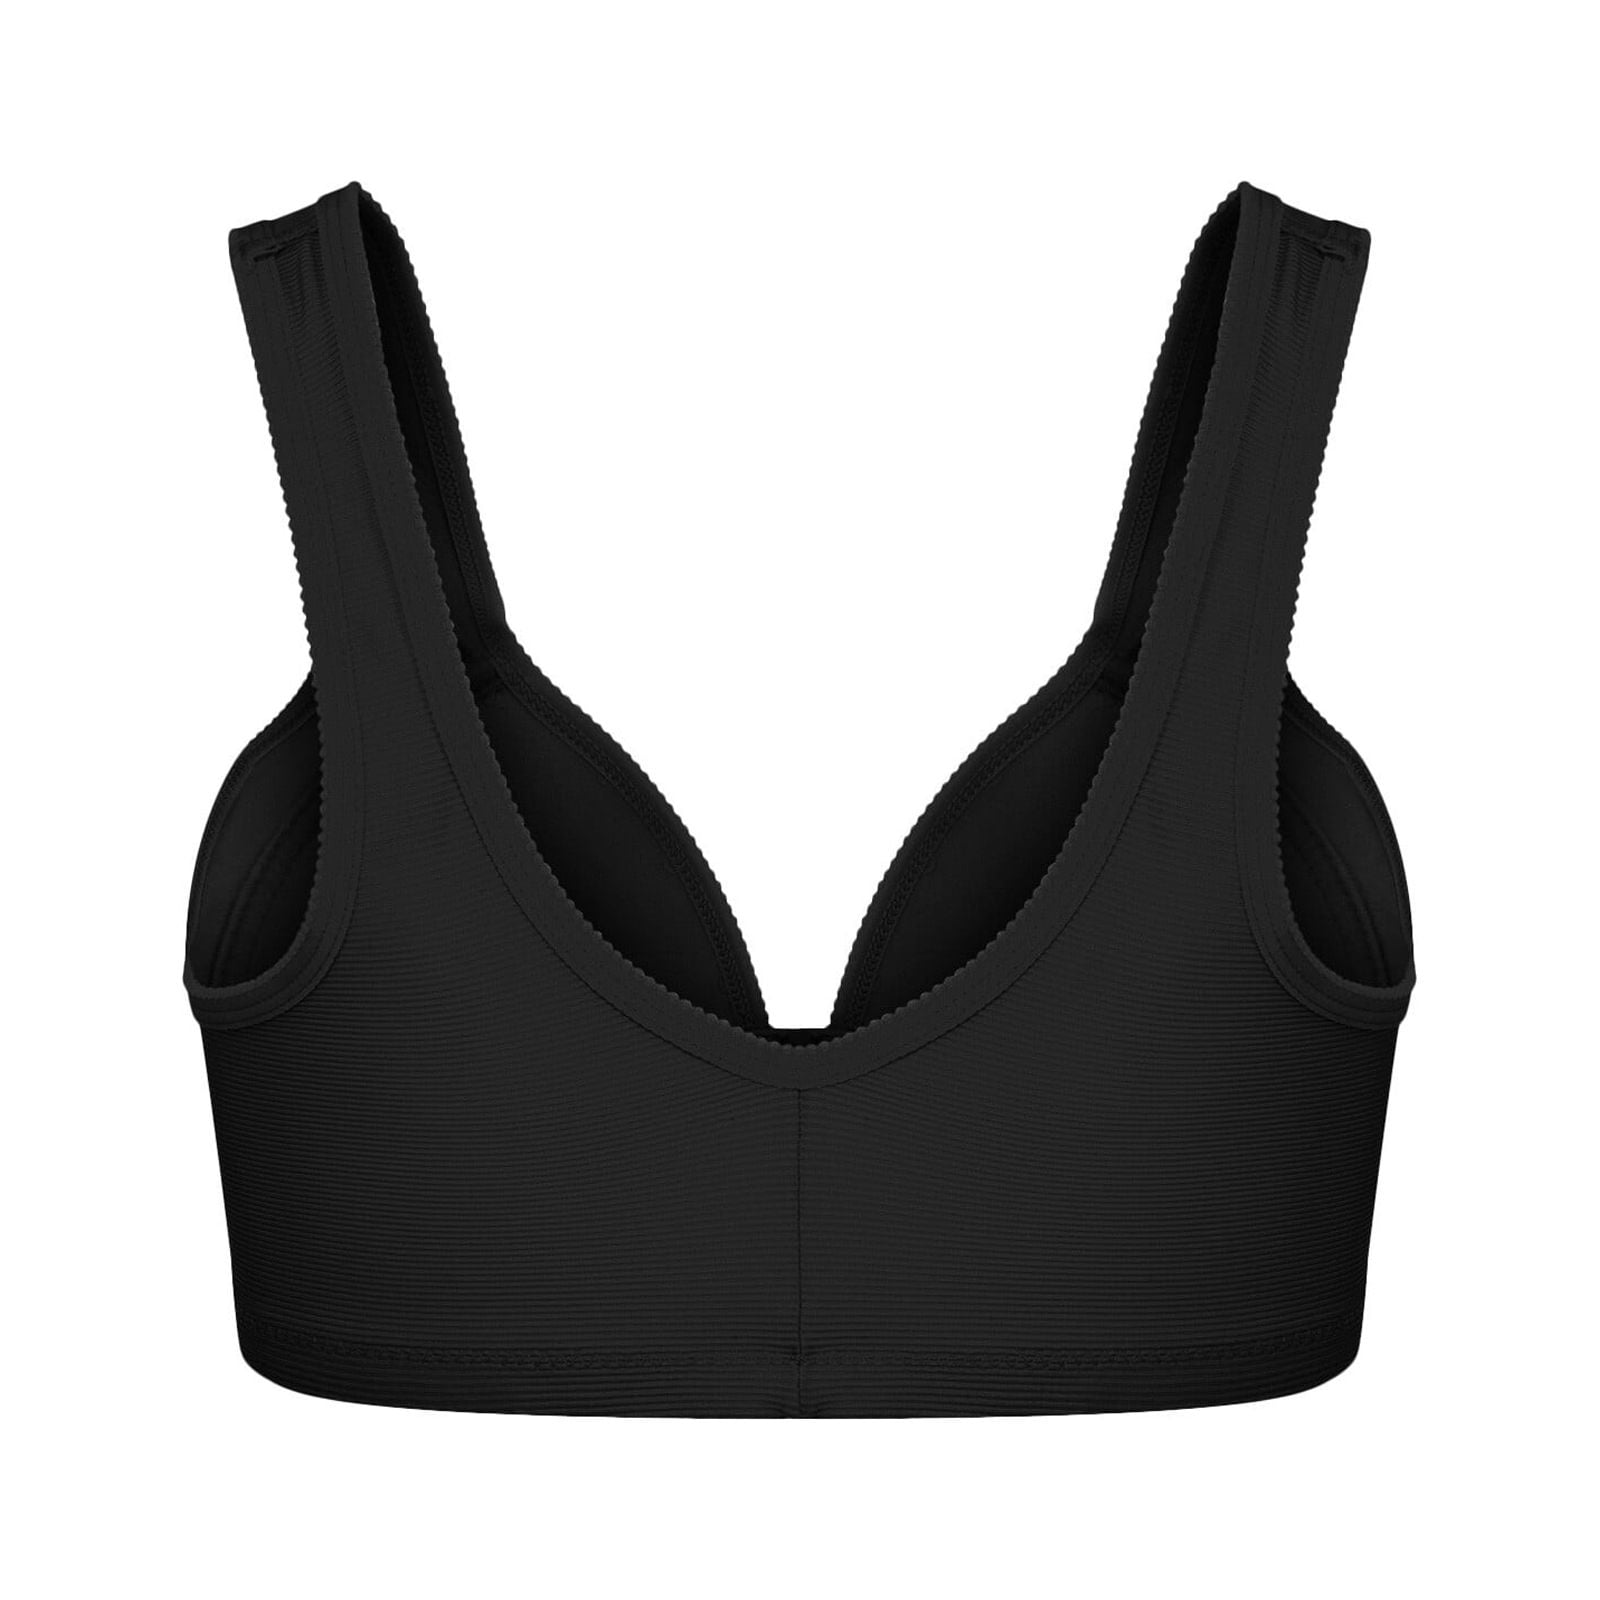 CHGBMOK Bras for Women Comfort Front Close Bra Wirefree Underwear